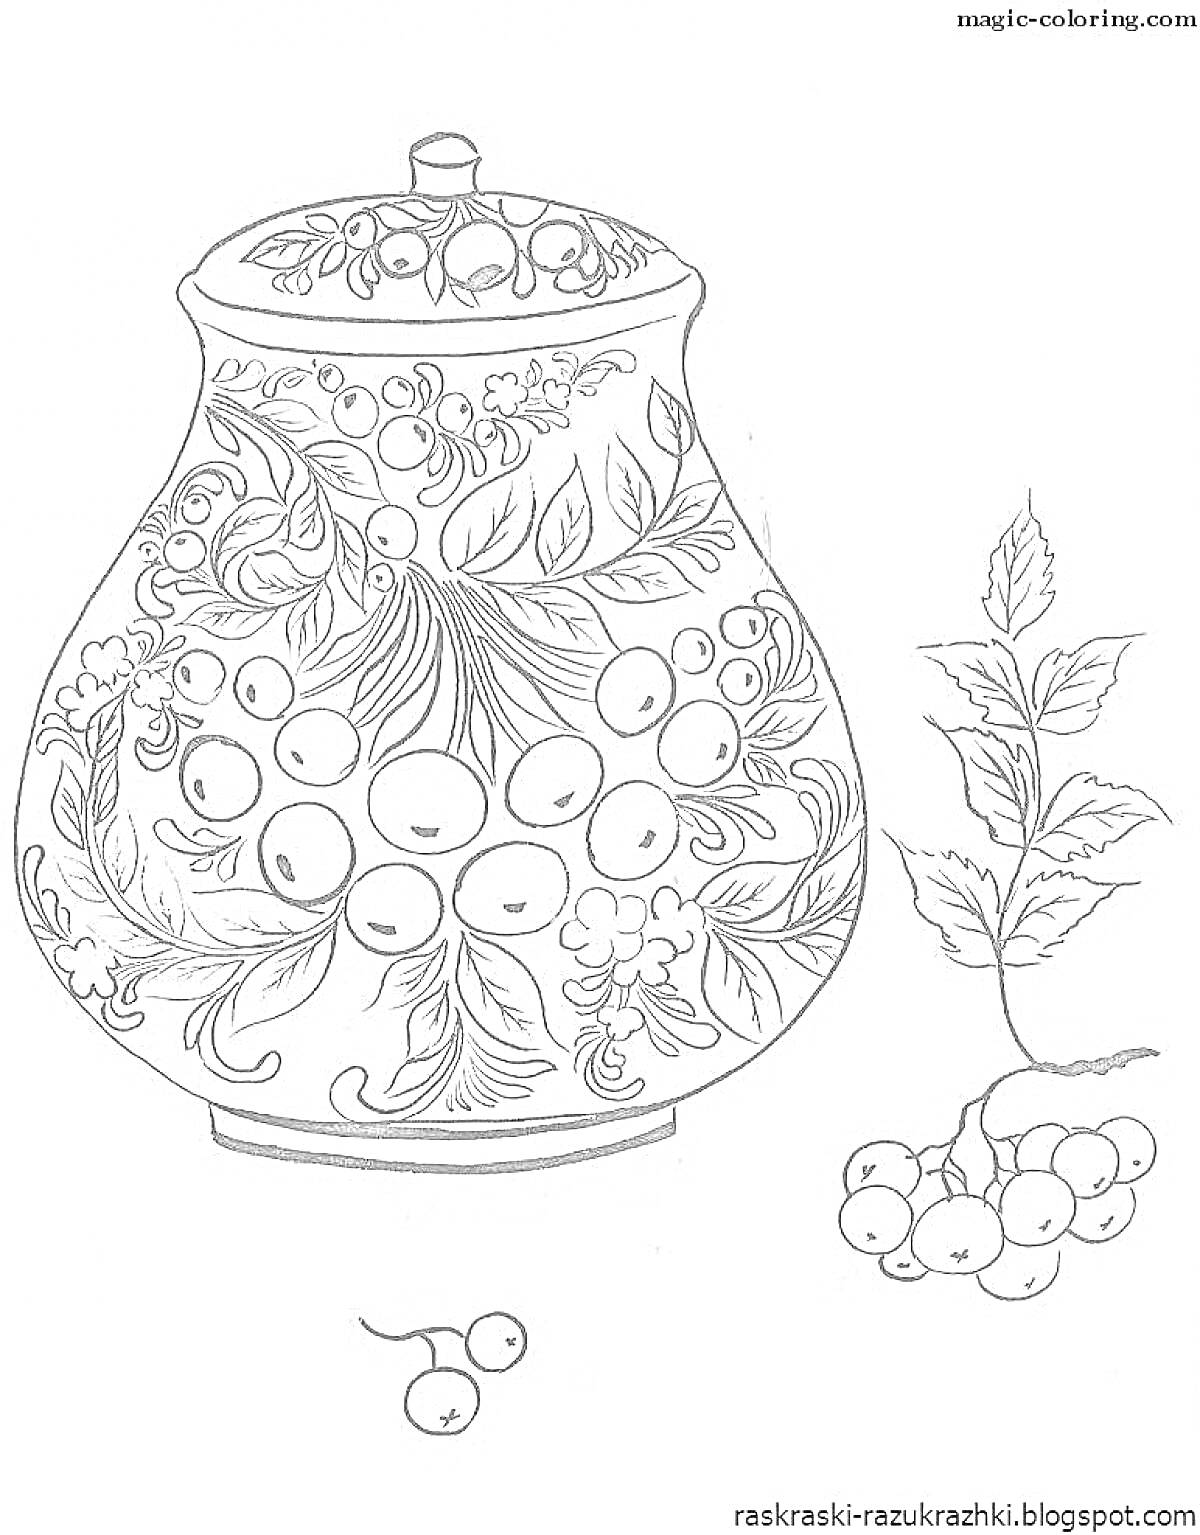 Раскраска Ваза с растительными узорами и ягодами